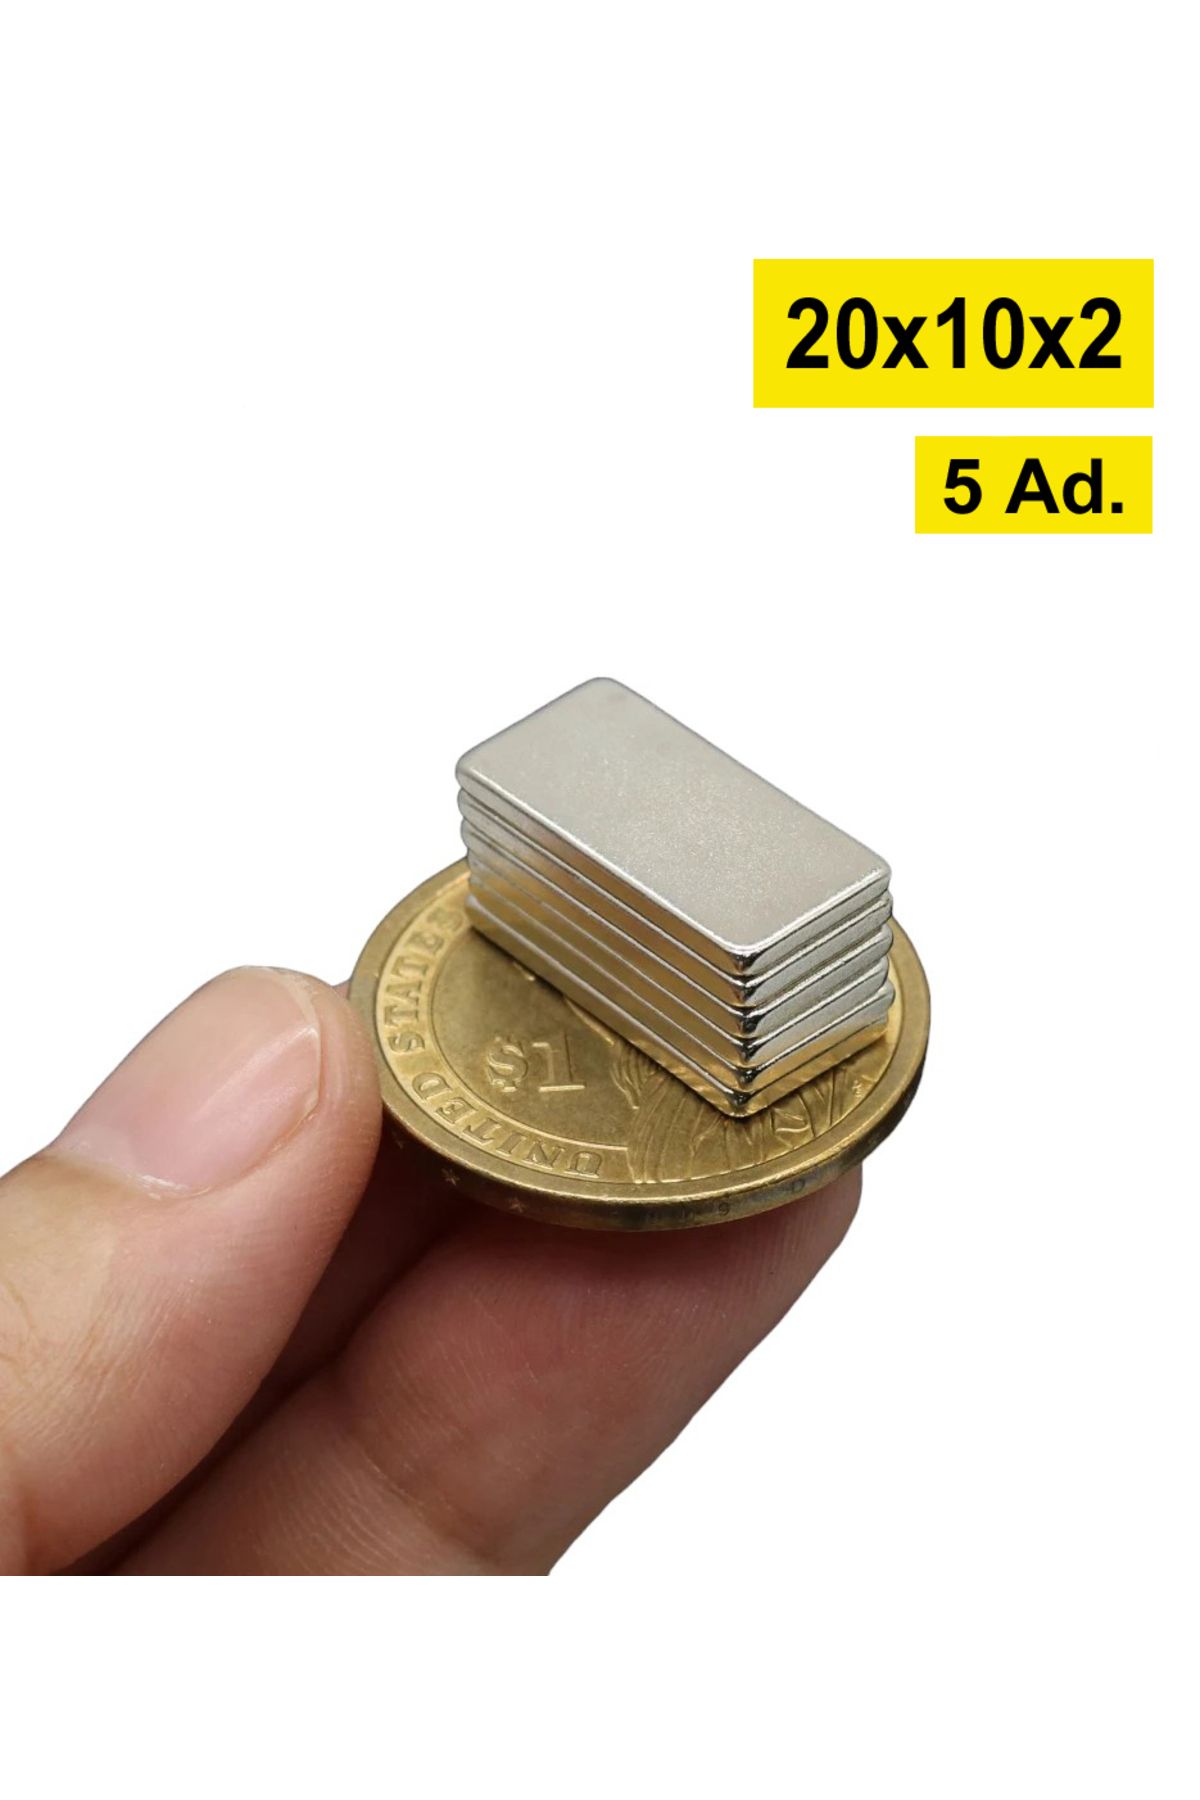 Dünya Magnet Neodyum Mıknatıs Dekoratif Magnet Güçlü Çekim 20x10x2 Mm 5 Adet